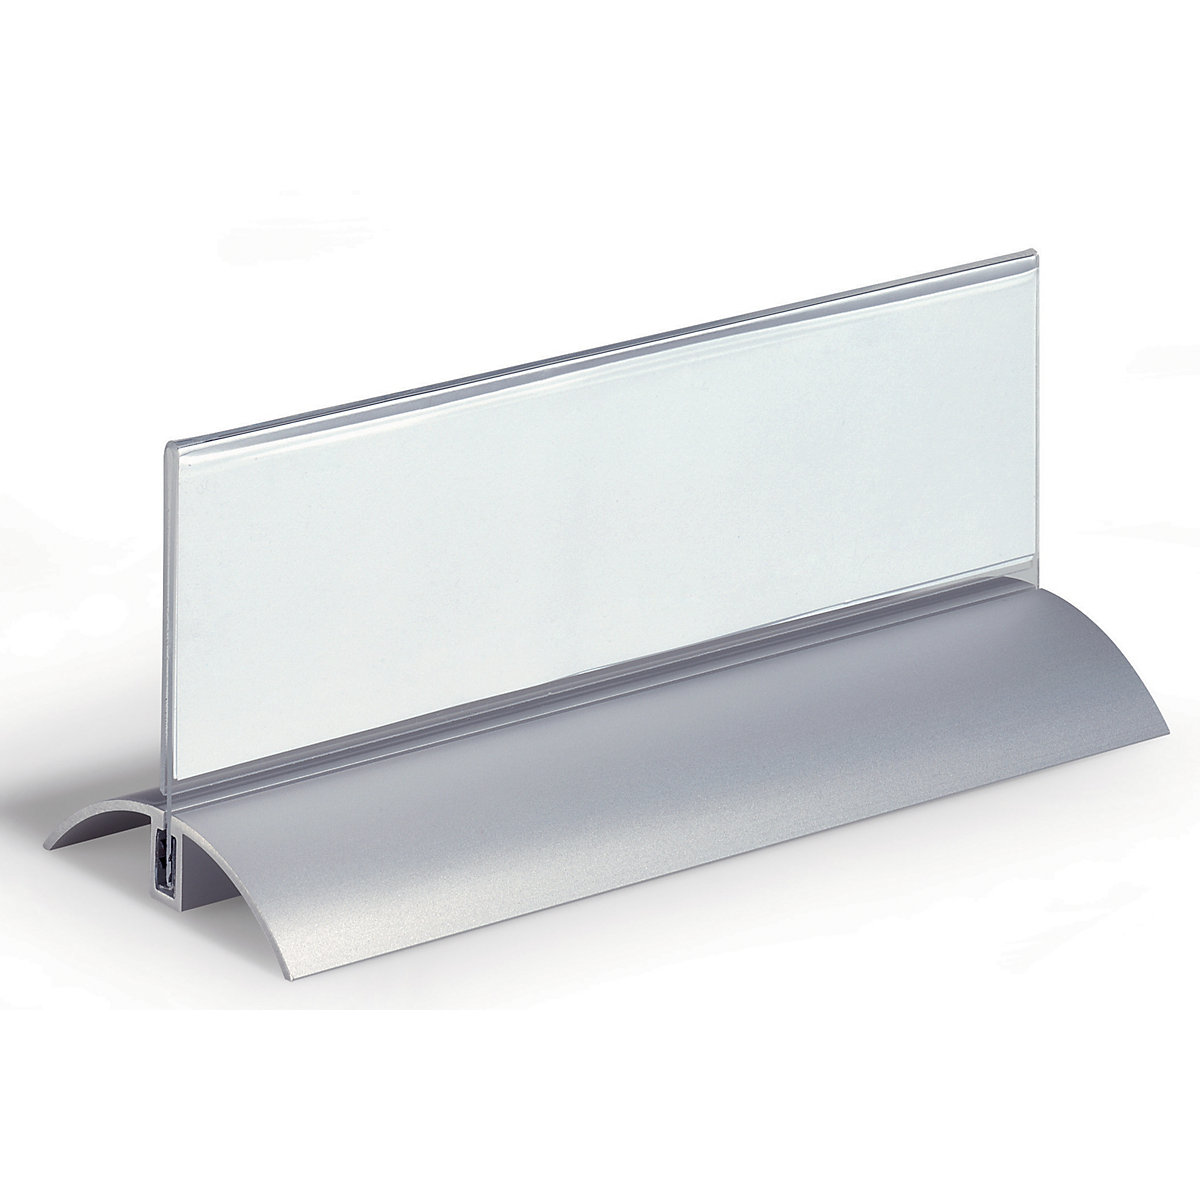 Identyfikator na stół, akryl z aluminiową podstawką – DURABLE